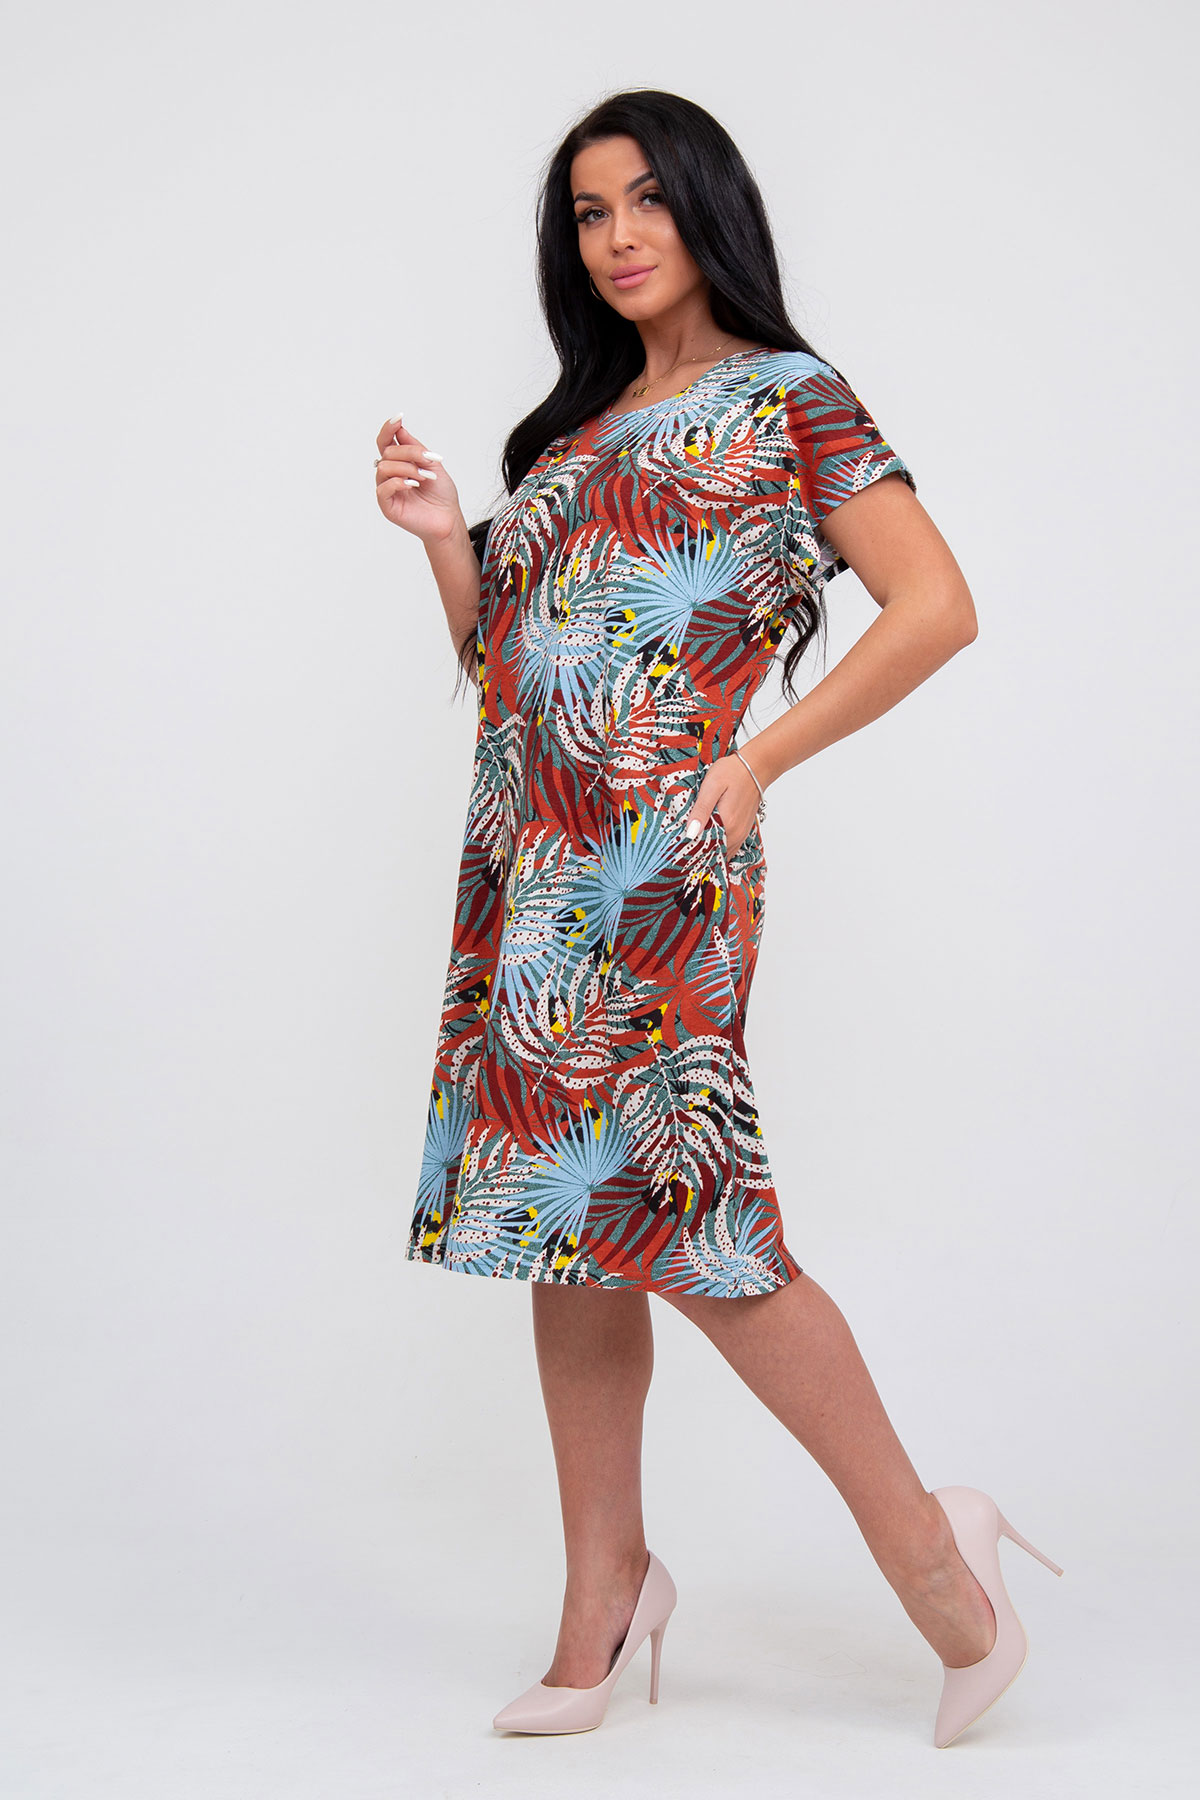 Жен. платье повседневное арт. 23-0308 Терракотовый р. 62 Моделлини, размер 62 - фото 5